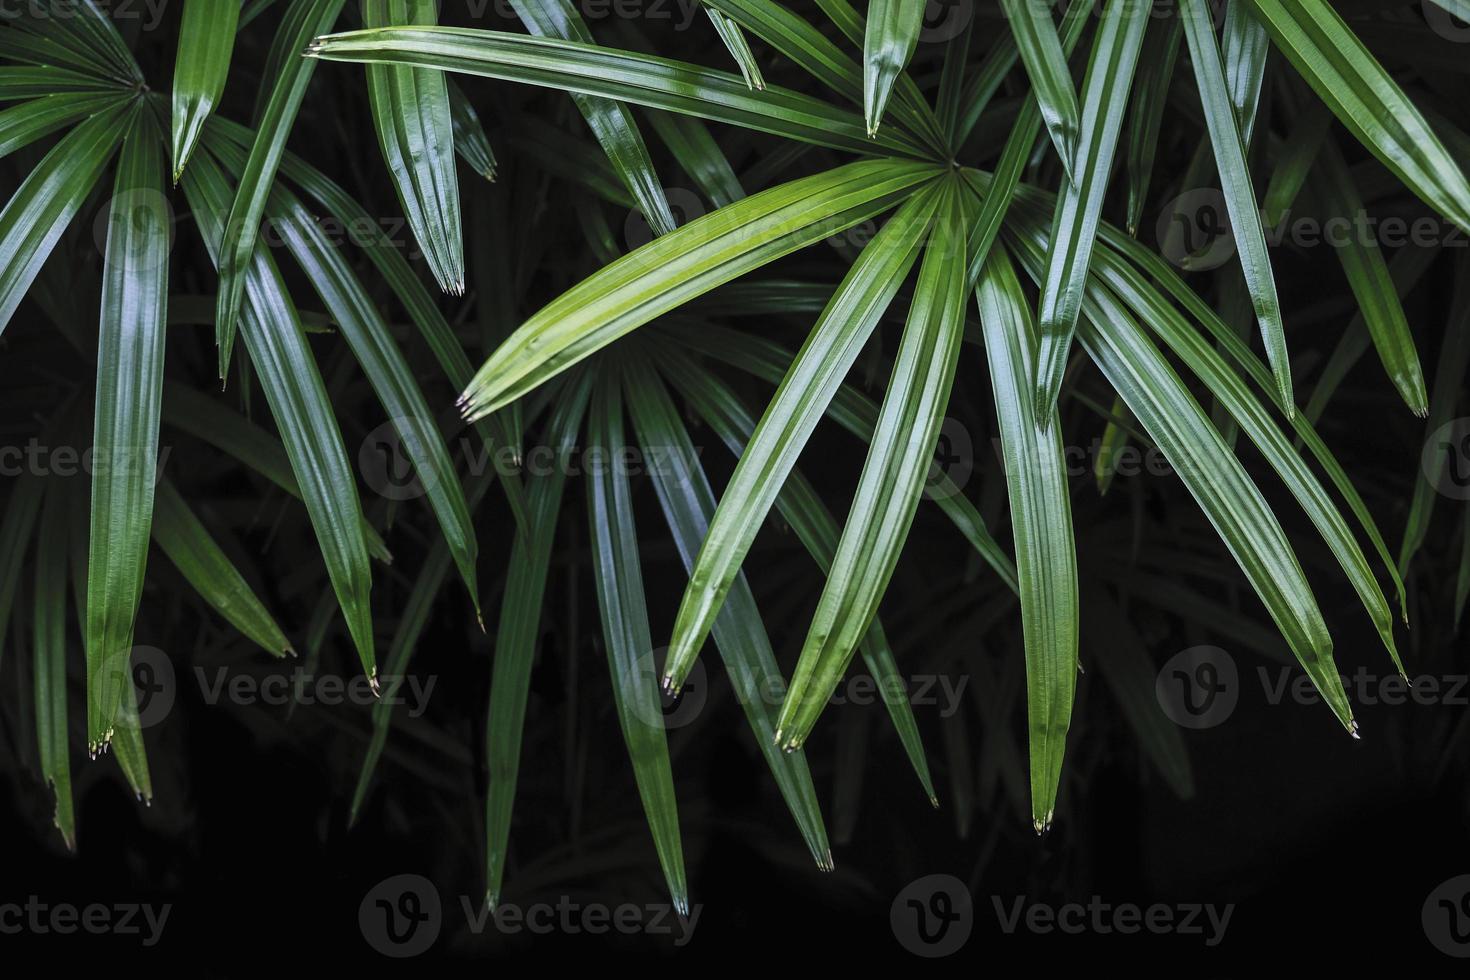 rhapis excelsa of dame palmboom op de achtergrond van de tuin tropische bladeren foto